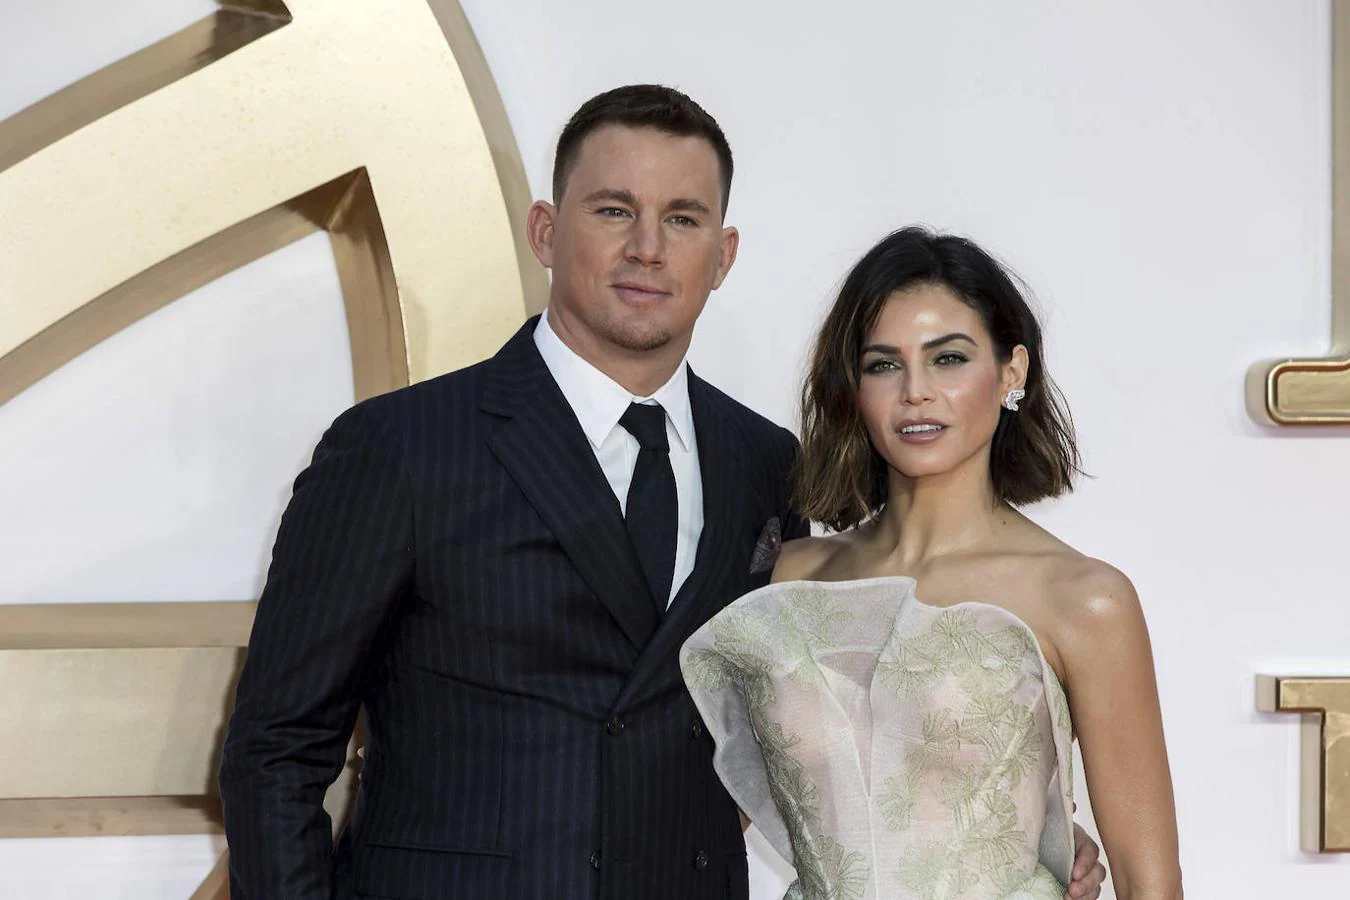 'Celebrities' divorciadas o separadas que son amigos: Jenna Dewan y Channing Tatum